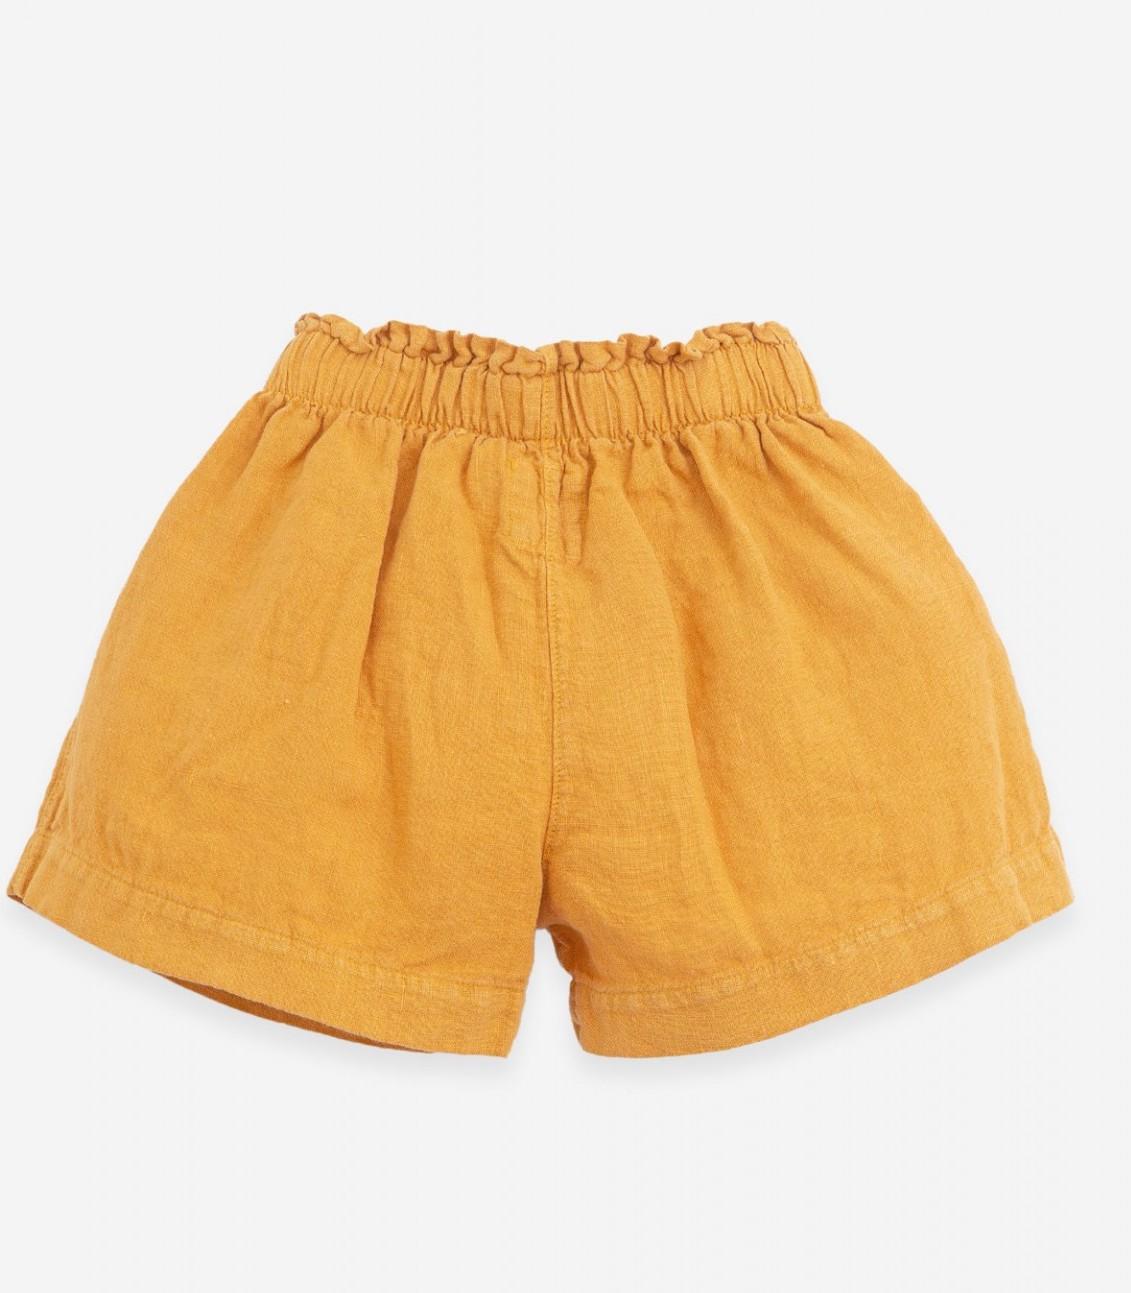 Pantalón corto de lino en color mostaza de Play Up